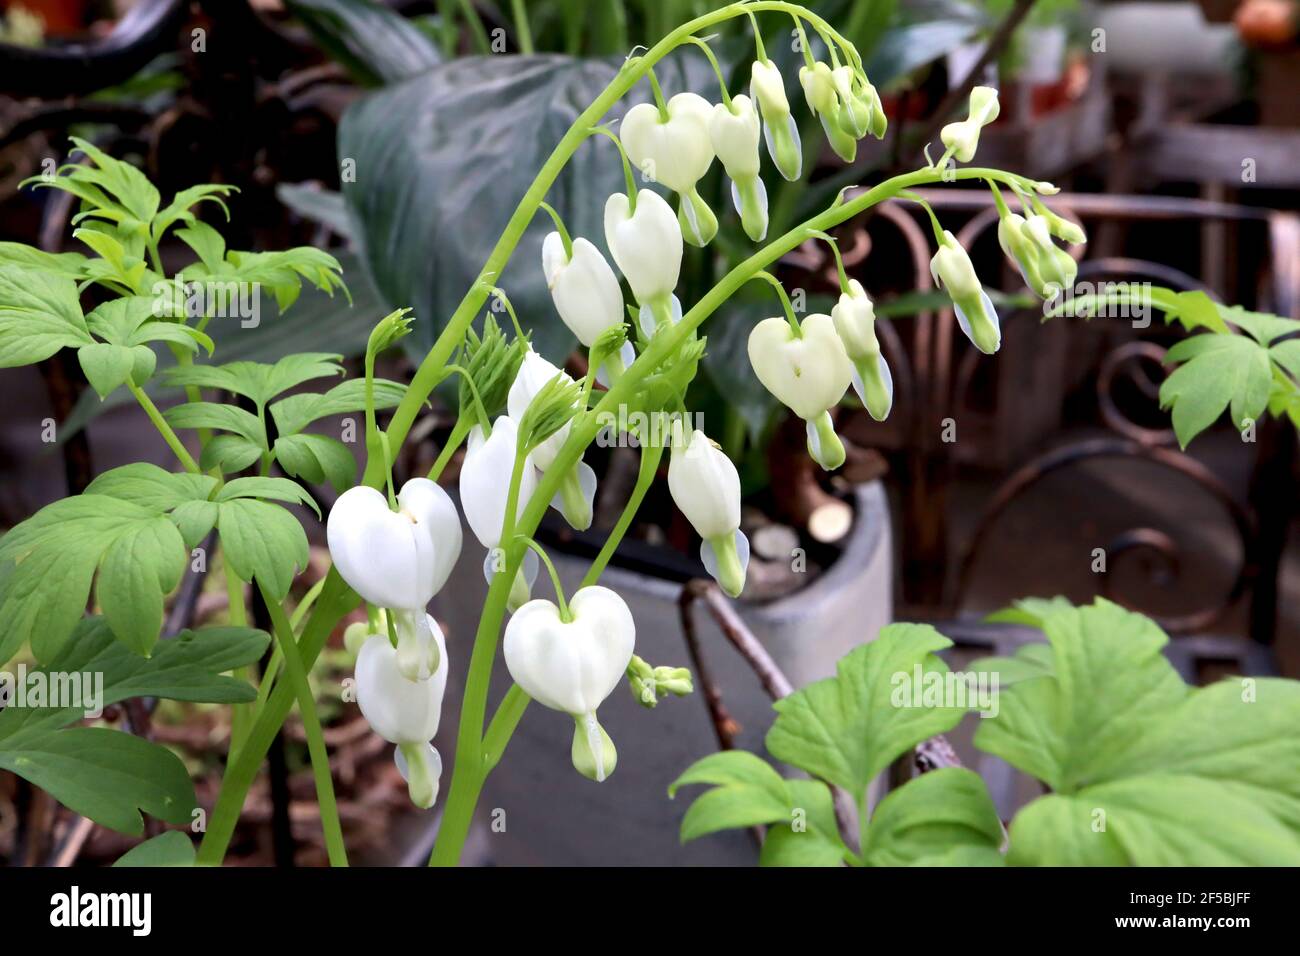 Lamprocapnos spectabilis ‘Alba’ Dicentra spectabilis Alba – weiße herzförmige Blüten mit farnem Laub, März, England, Großbritannien Stockfoto